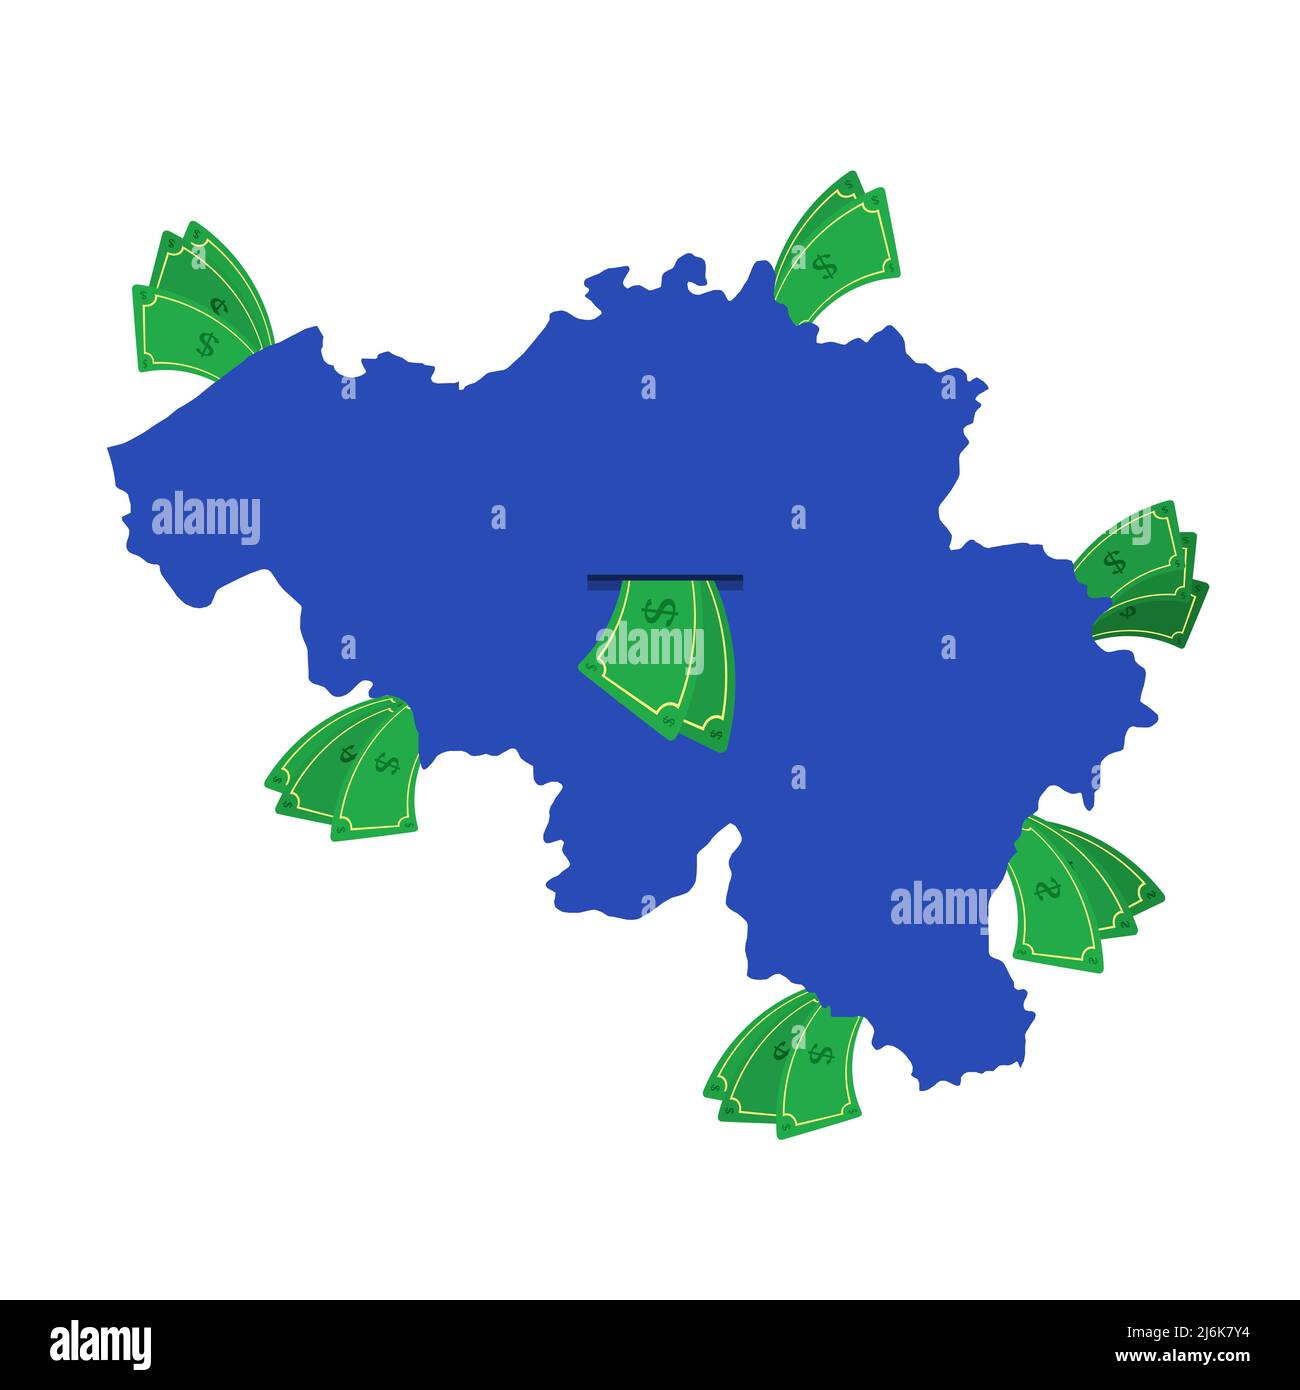 Belgien Karte in blau mit Geldscheinen um. Geld verlässt das Zentrum des Landes. Wirtschaft des belgischen Landes. Weißer Hintergrund. Isoliert. Stock Vektor